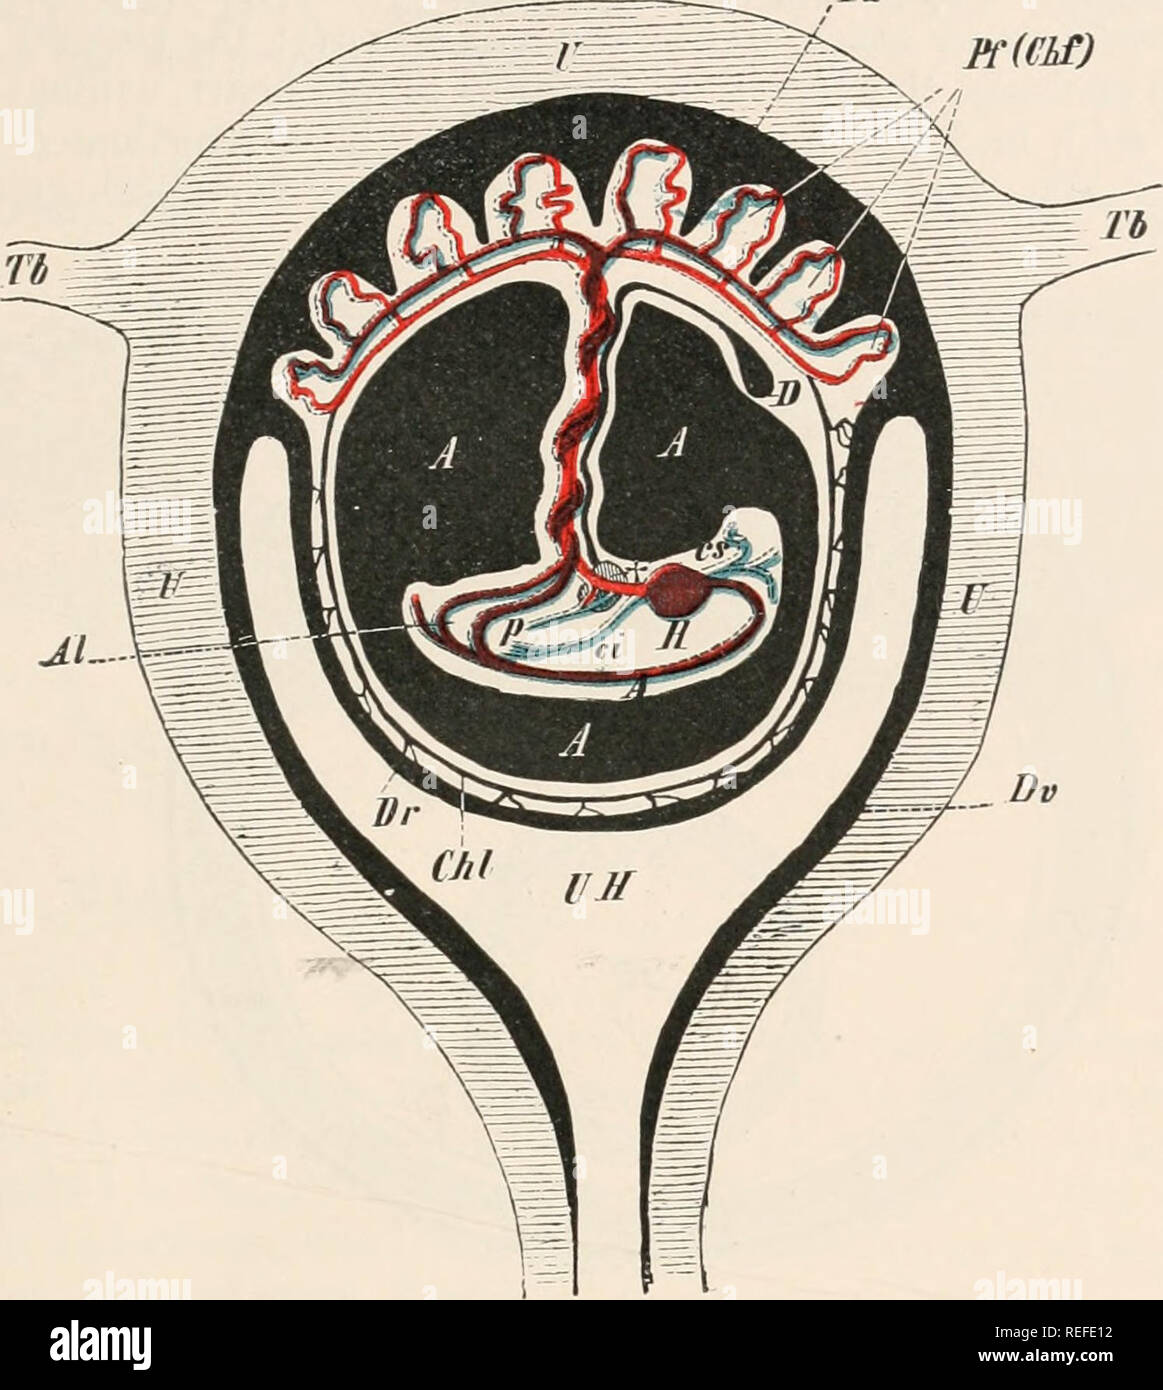 . L'anatomie comparée des vertébrés. L'anatomie, les vertébrés ; comparatifs. INTRODUCTION 11 allantoïde. Ce dernier s'attache à une région précise de la paroi utérine, et à partir de ce processus ou vasculaires surviennent villi, afin que le sang maternel et fœtal navires-entrer en relations très étroites avec l'autre. Ainsi, un placenta allantoïdien est Pa PC(NSI). Dv FIG. 9.-PAR LA SECTION .schématique de l'utérus gravide. Un, l'aorte ; A, A, A, la cavité de l'amnios remplies de liquide : dans l'intérieur de l'amnios est vu l'embryon suspendu par le cordon ombilical torsadées ; Al, ombilicale (allantoïde) Banque D'Images